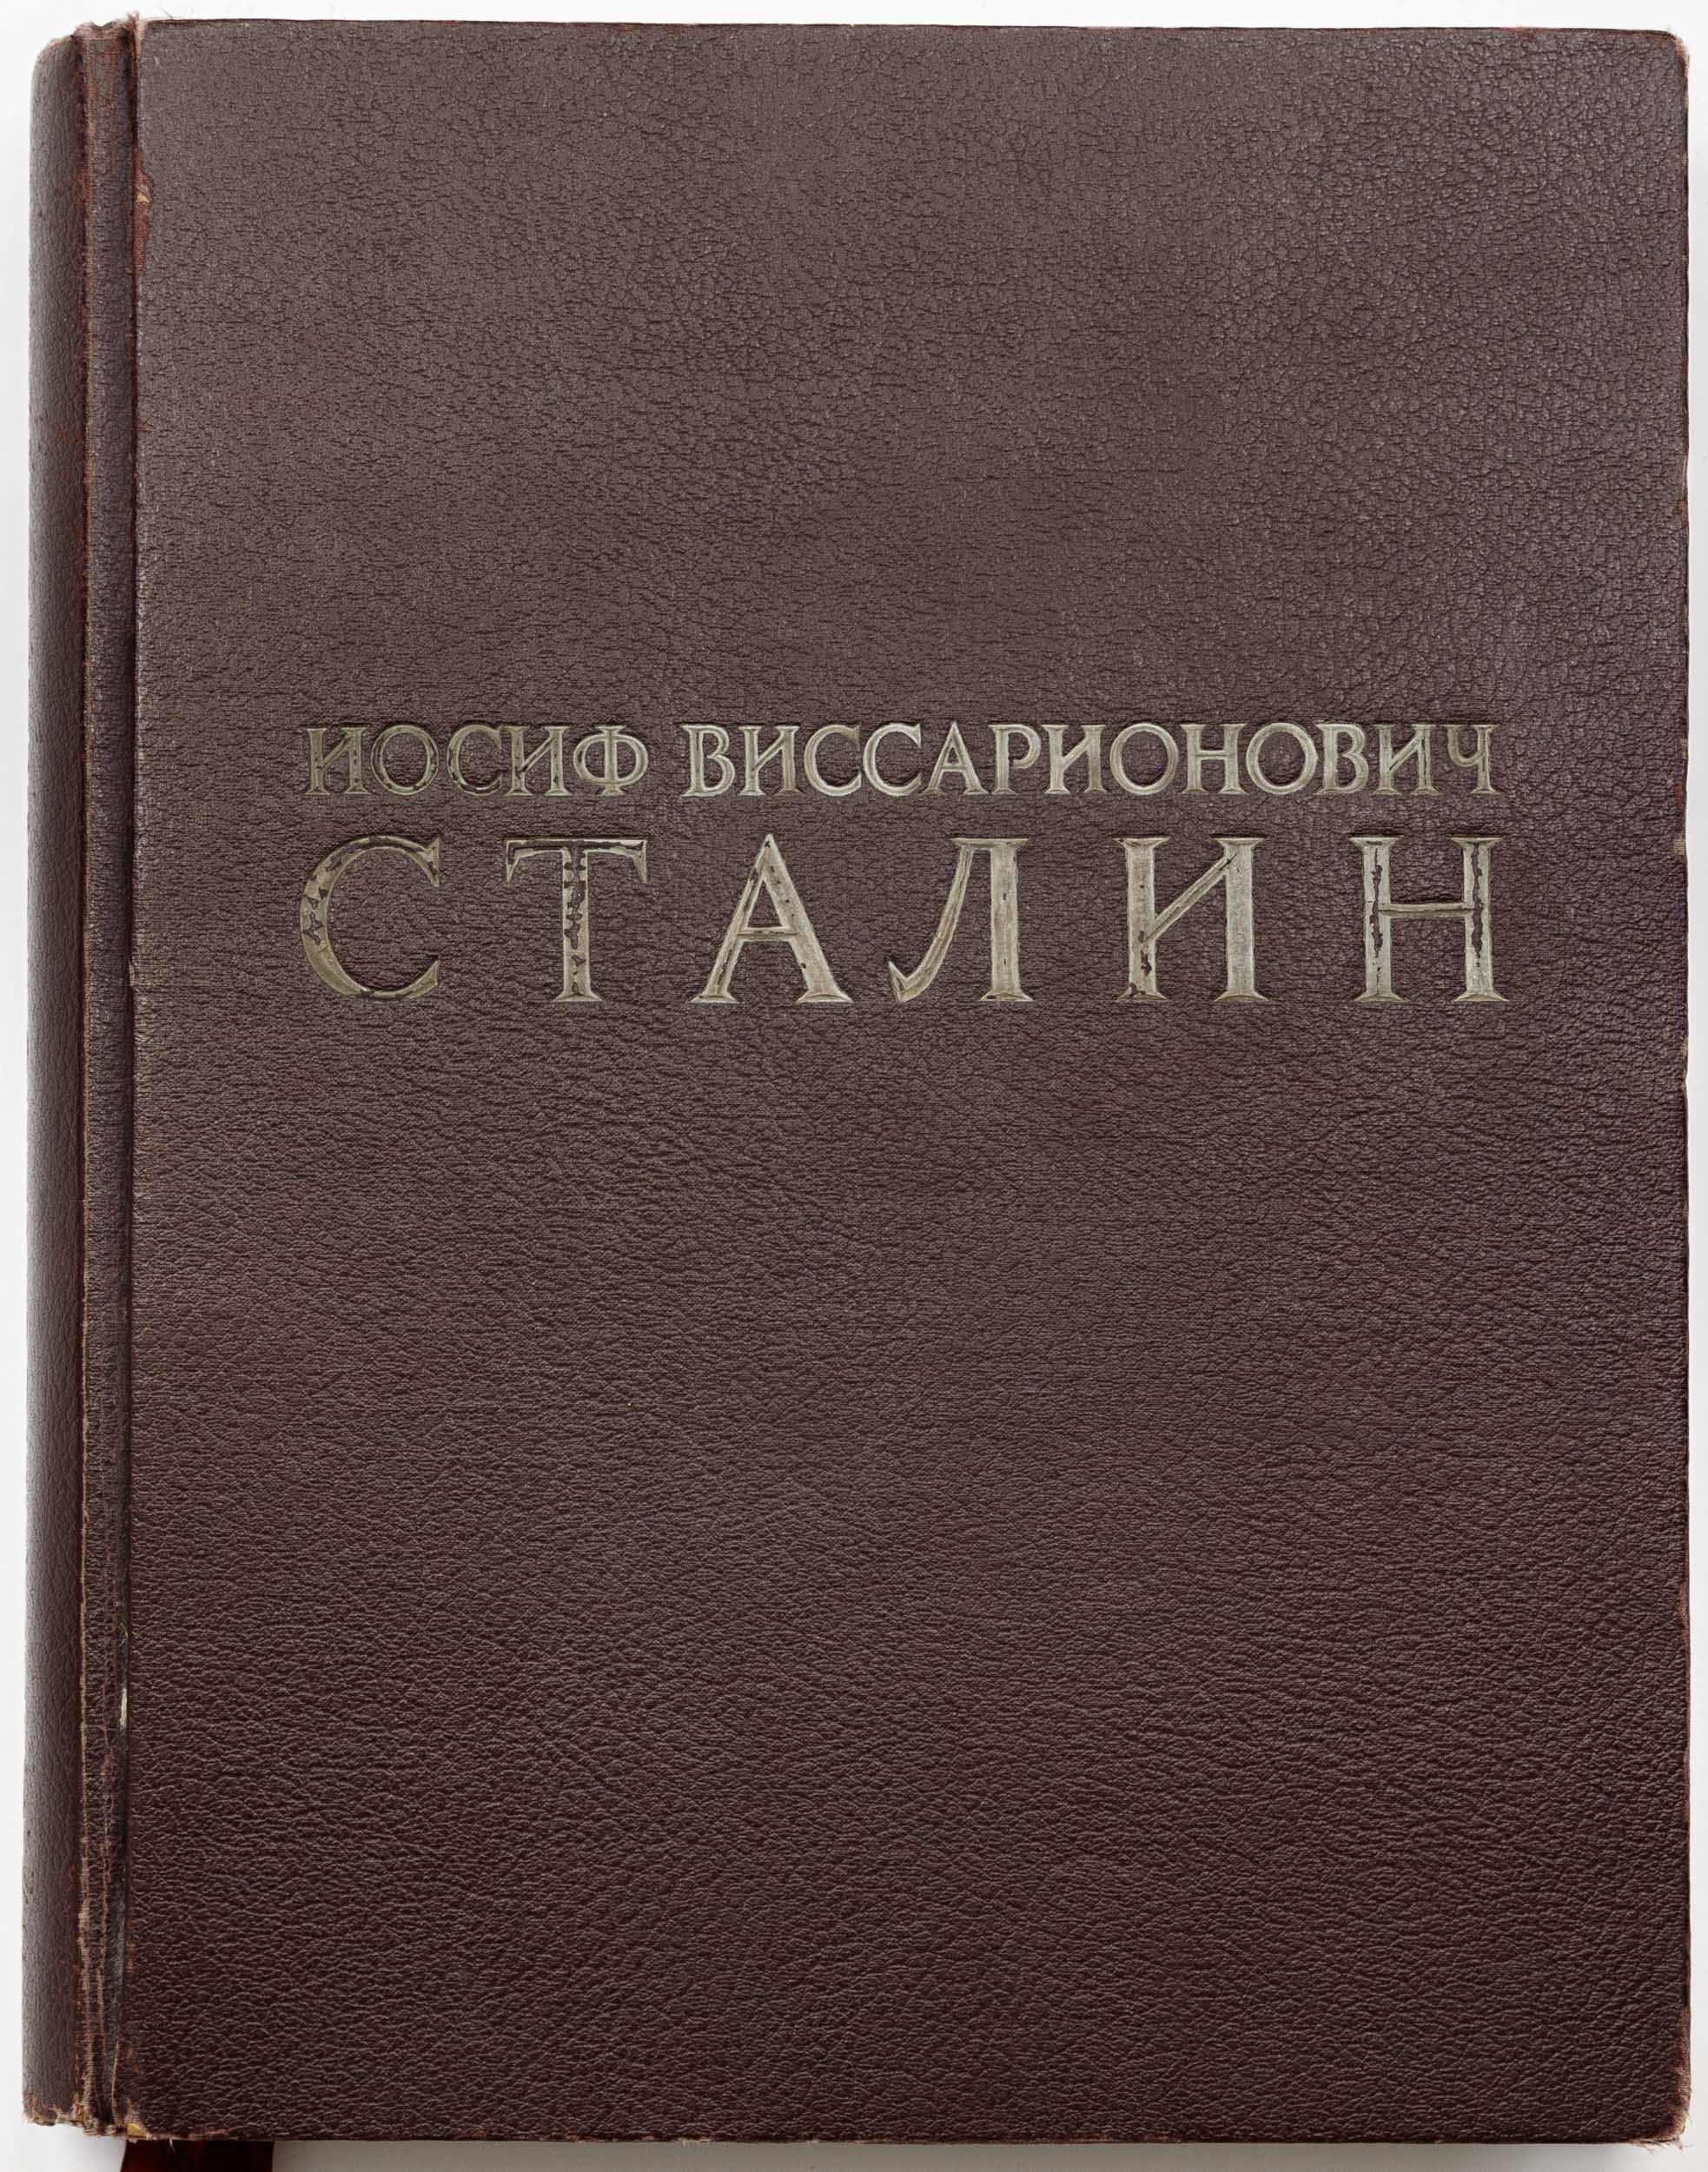 [Издание к 70-летнему юбилею И.В. Сталина]Иосиф Виссарионович Сталин.